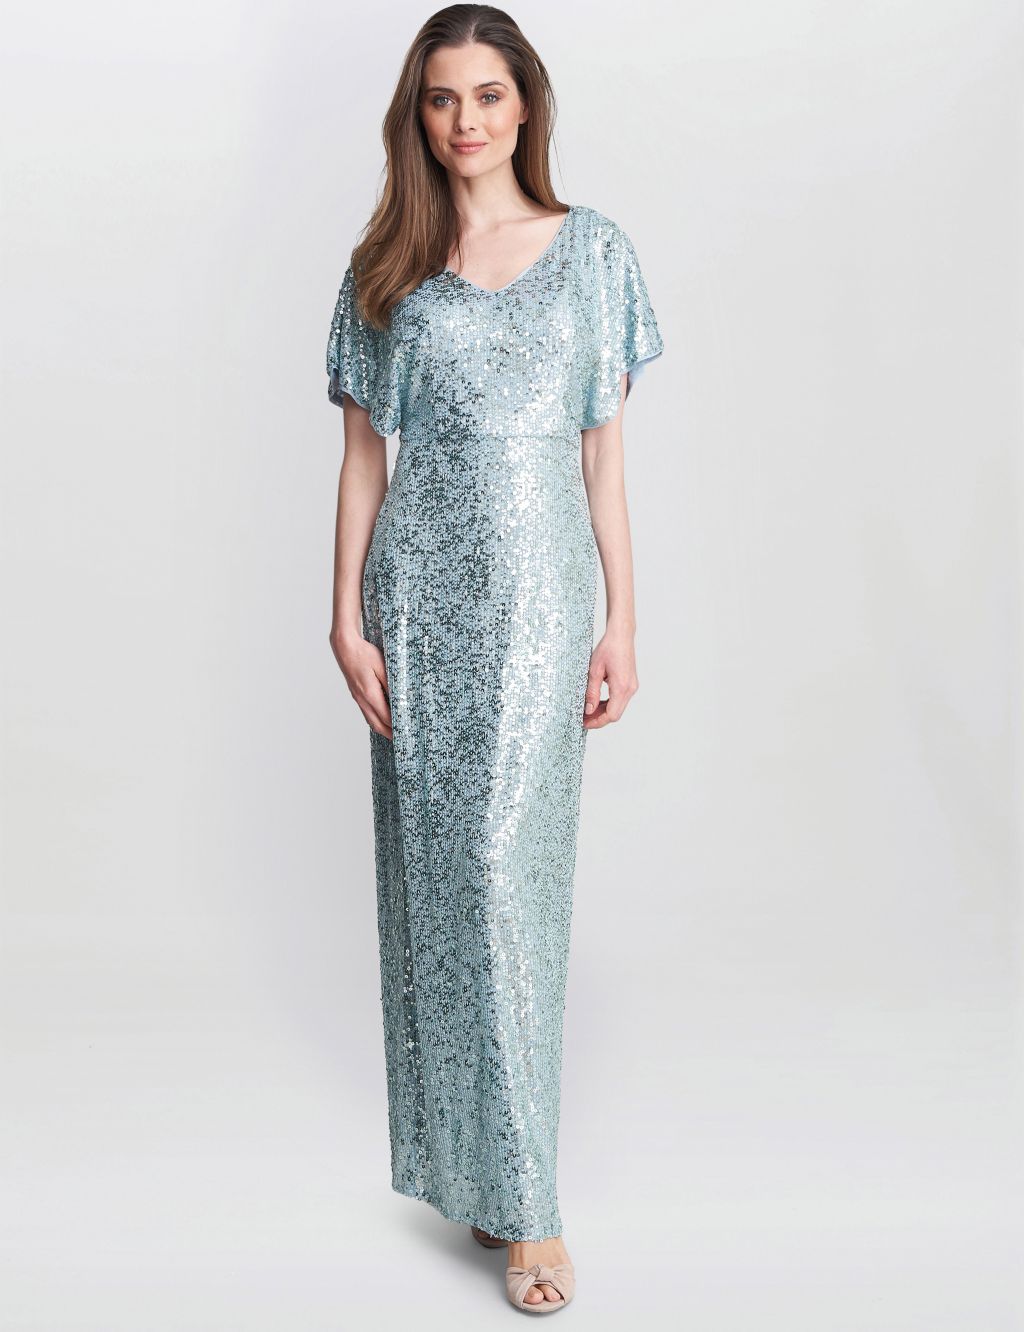 Sequin Embellished V-Neck Maxi Column Dress image 1